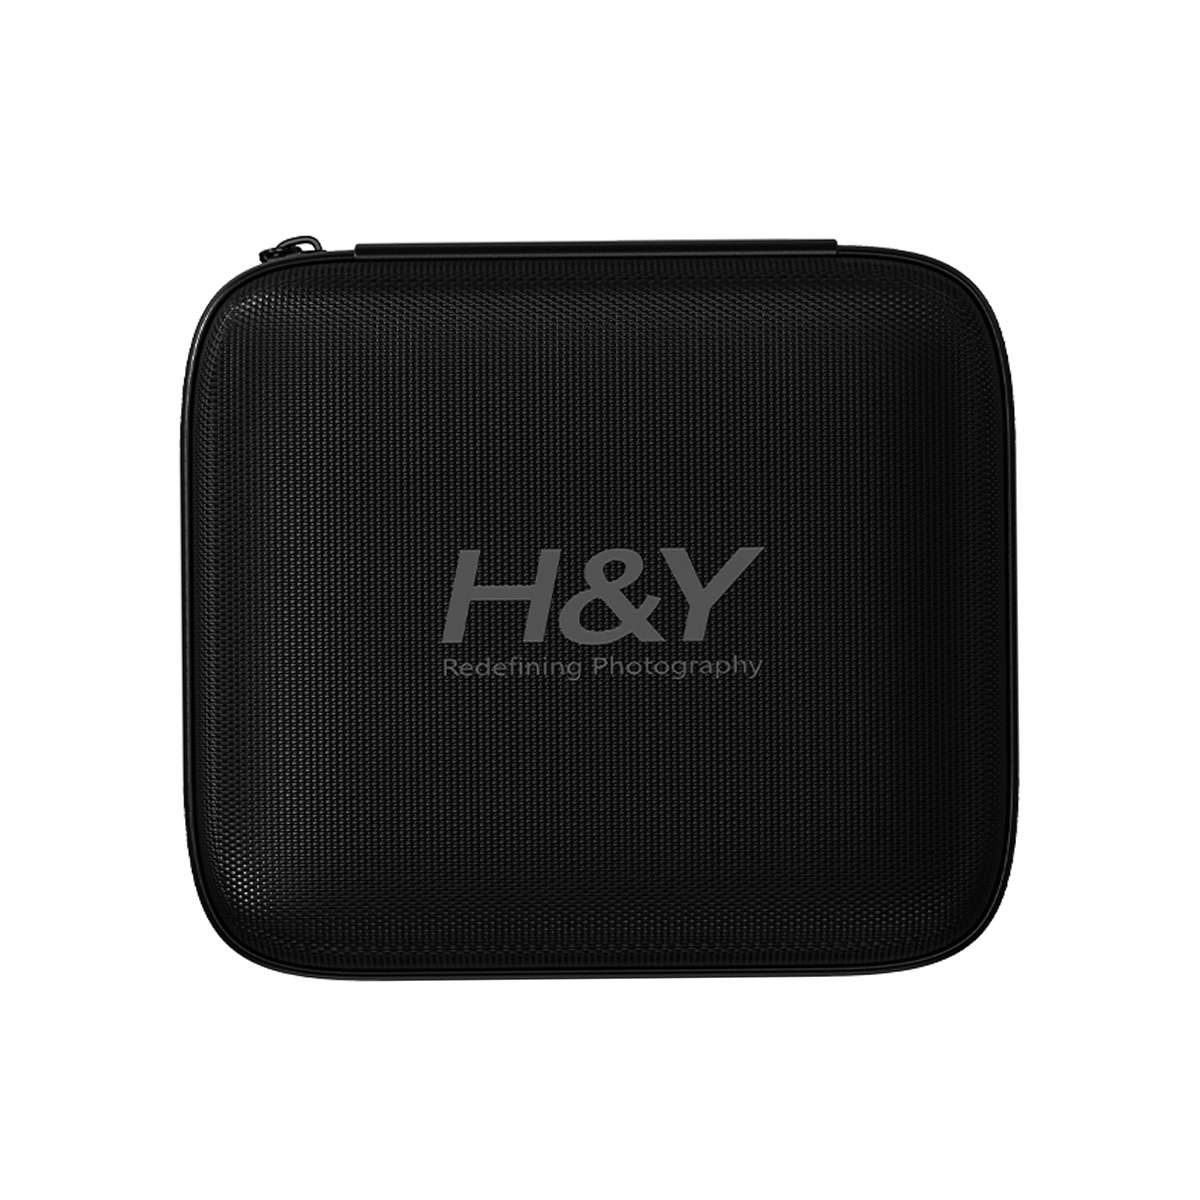 H&Y HD EVO-Series Landscape ND Filter Kit 72mm